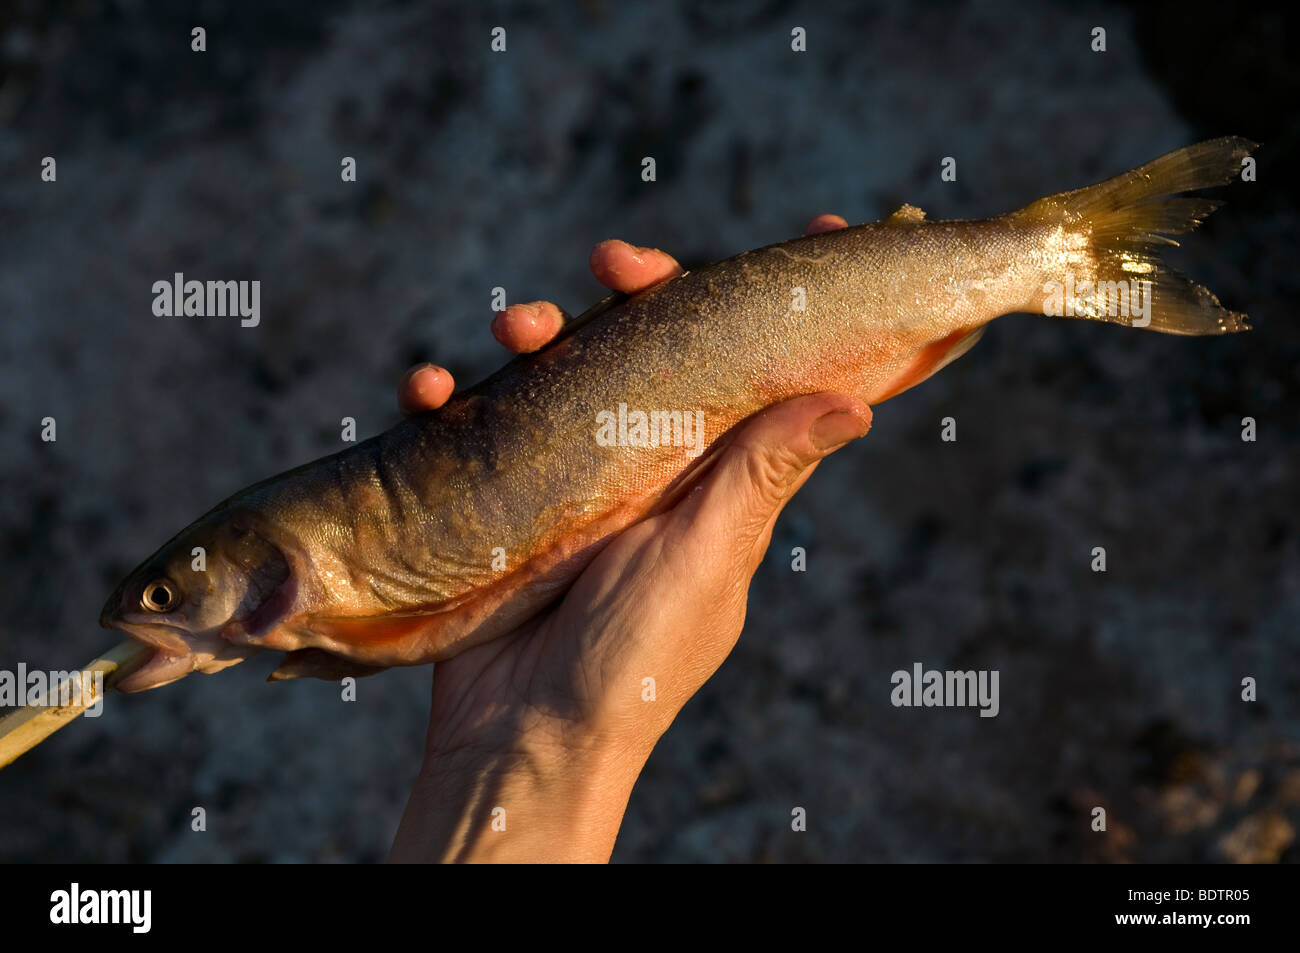 Gegrillet aufgespiesster fisch wird, le poisson est la torréfaction sur la broche, Laponie, Suède Banque D'Images